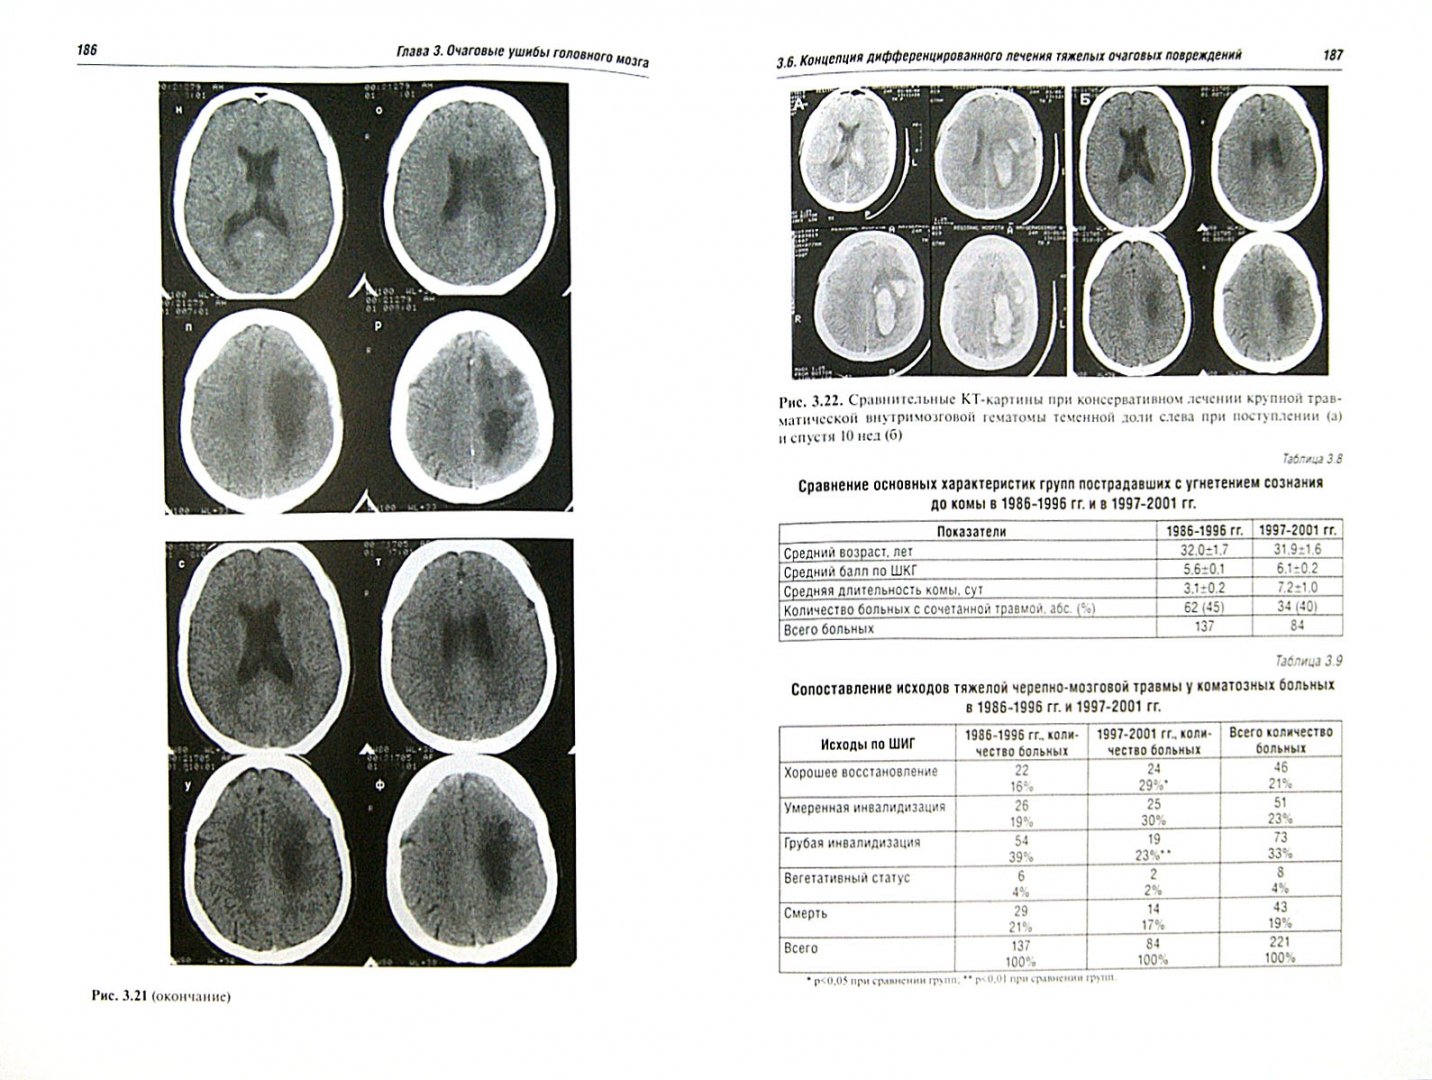 Иллюстрация 1 из 32 для Черепно-мозговая травма. Диагностика и лечение - Леонид Лихтерман | Лабиринт - книги. Источник: Лабиринт